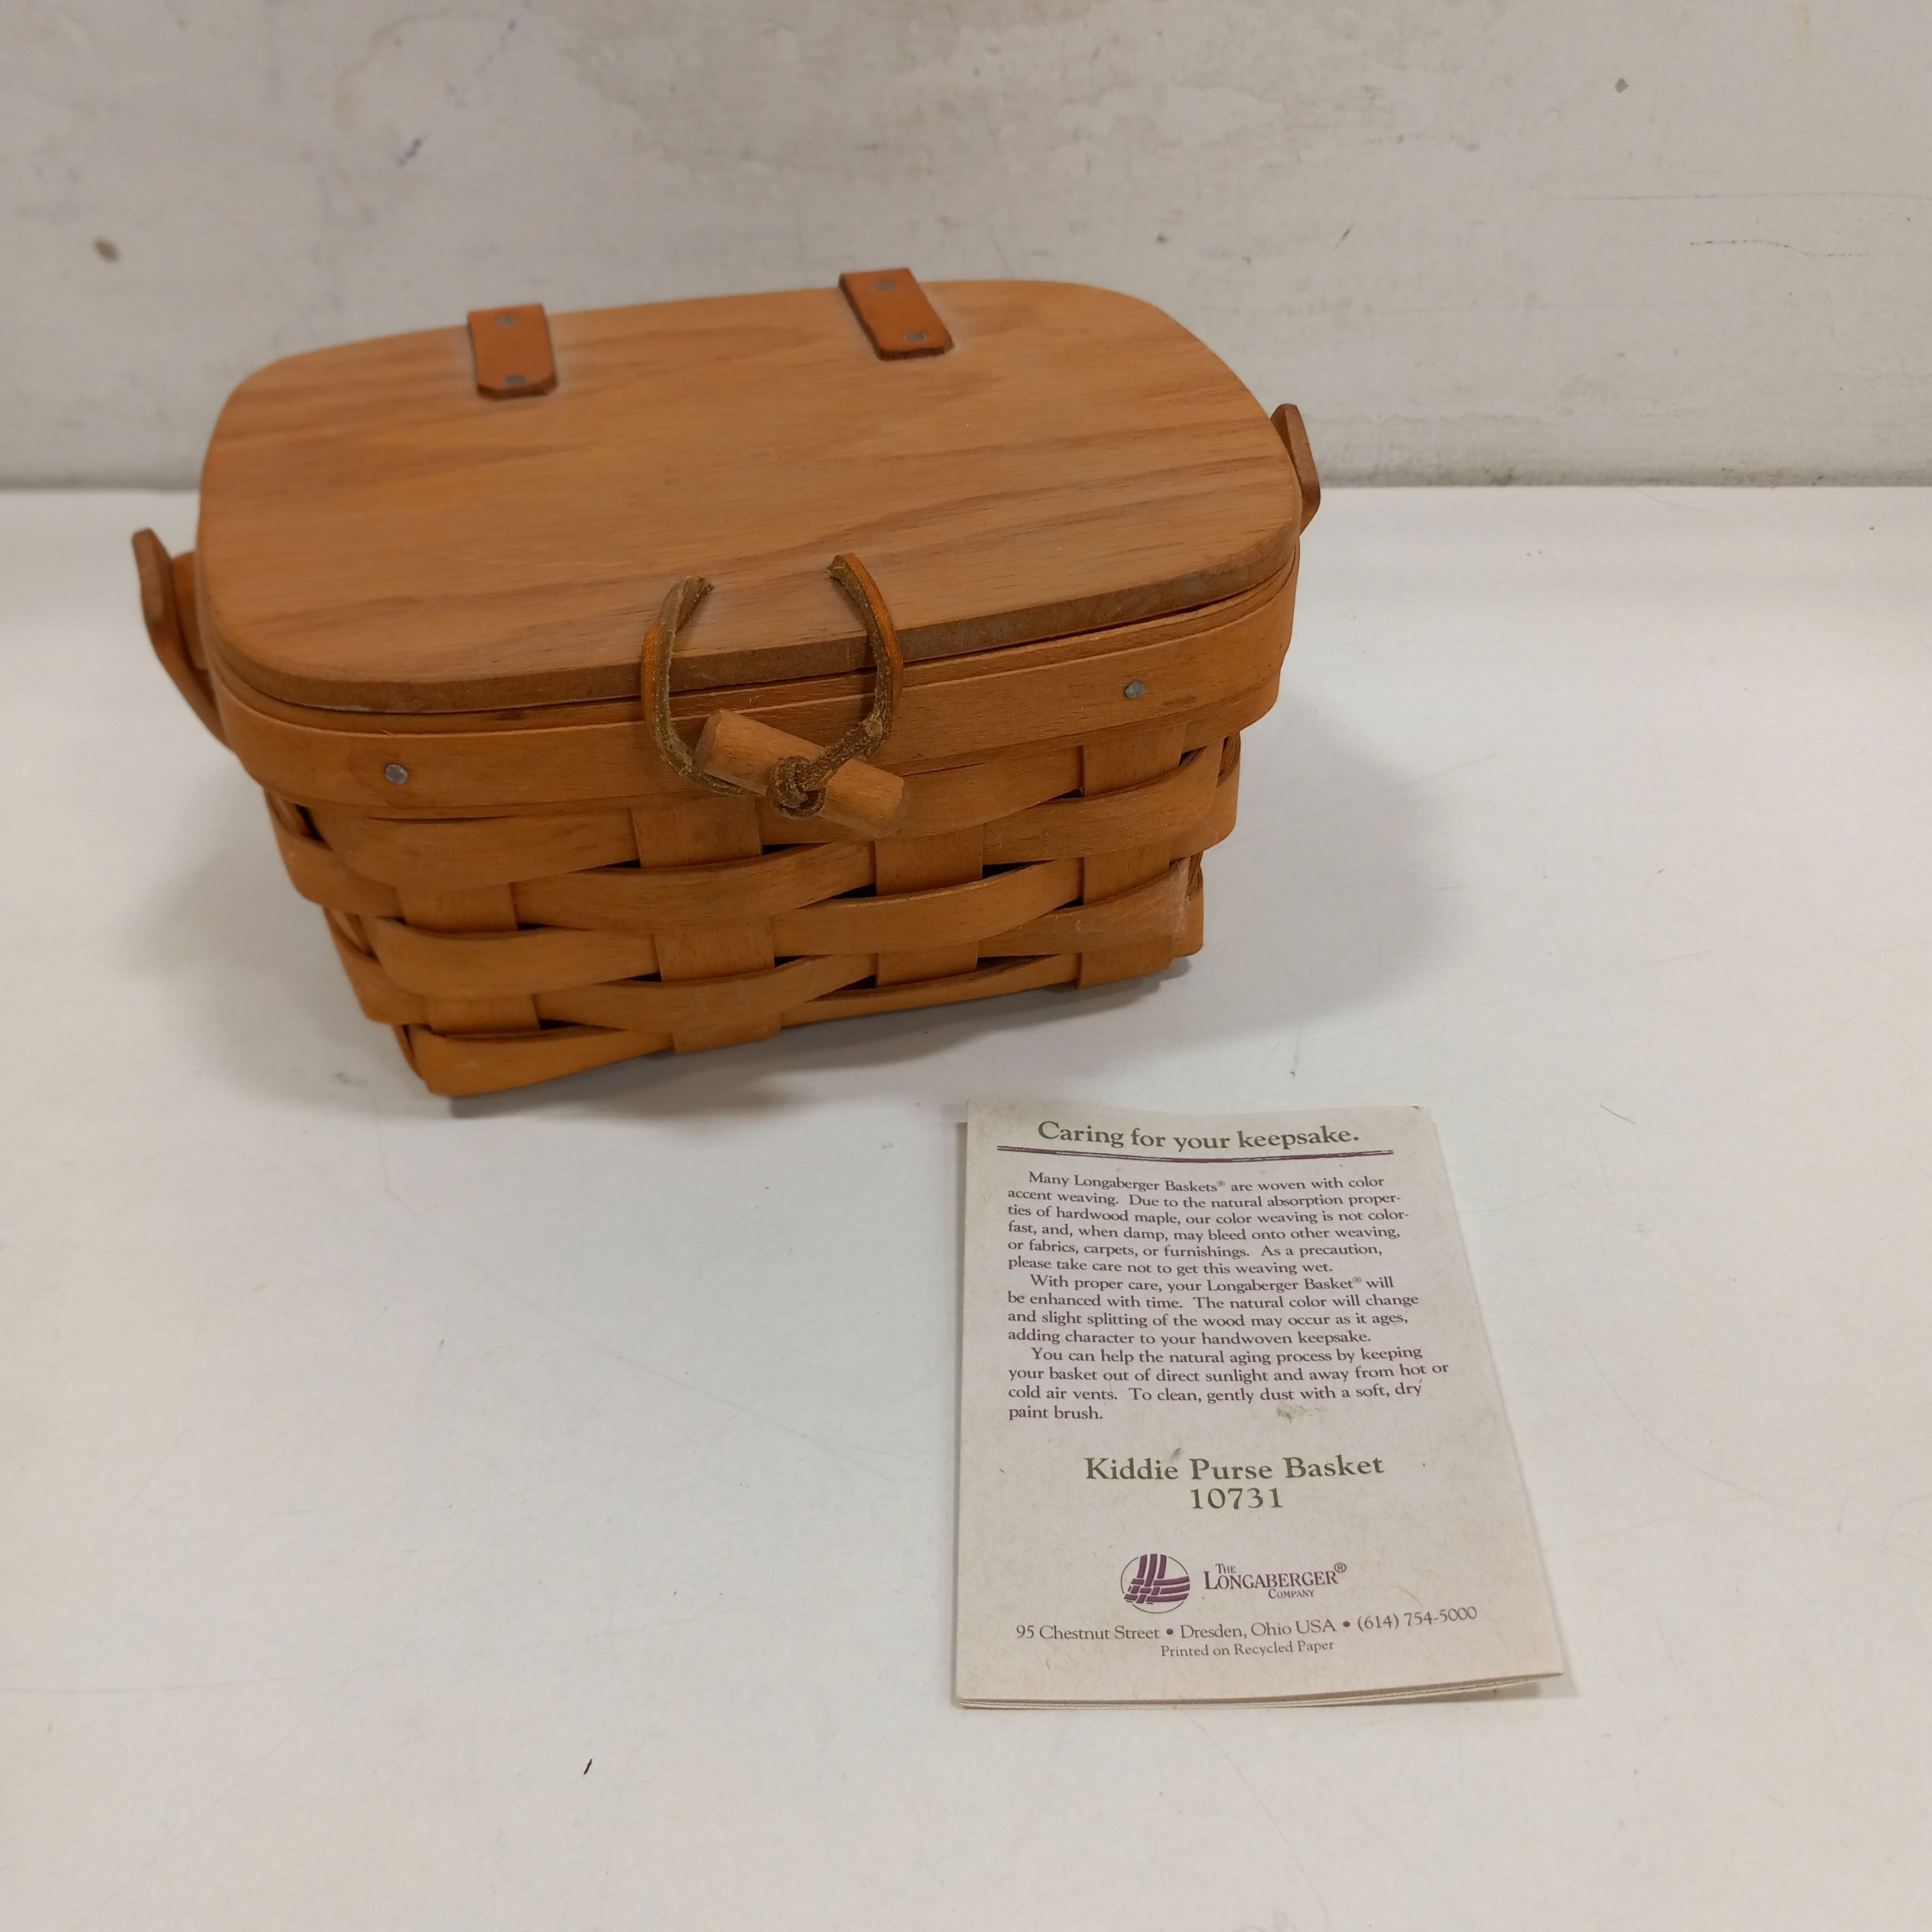 Sold at Auction: Longaberger Basket Purse